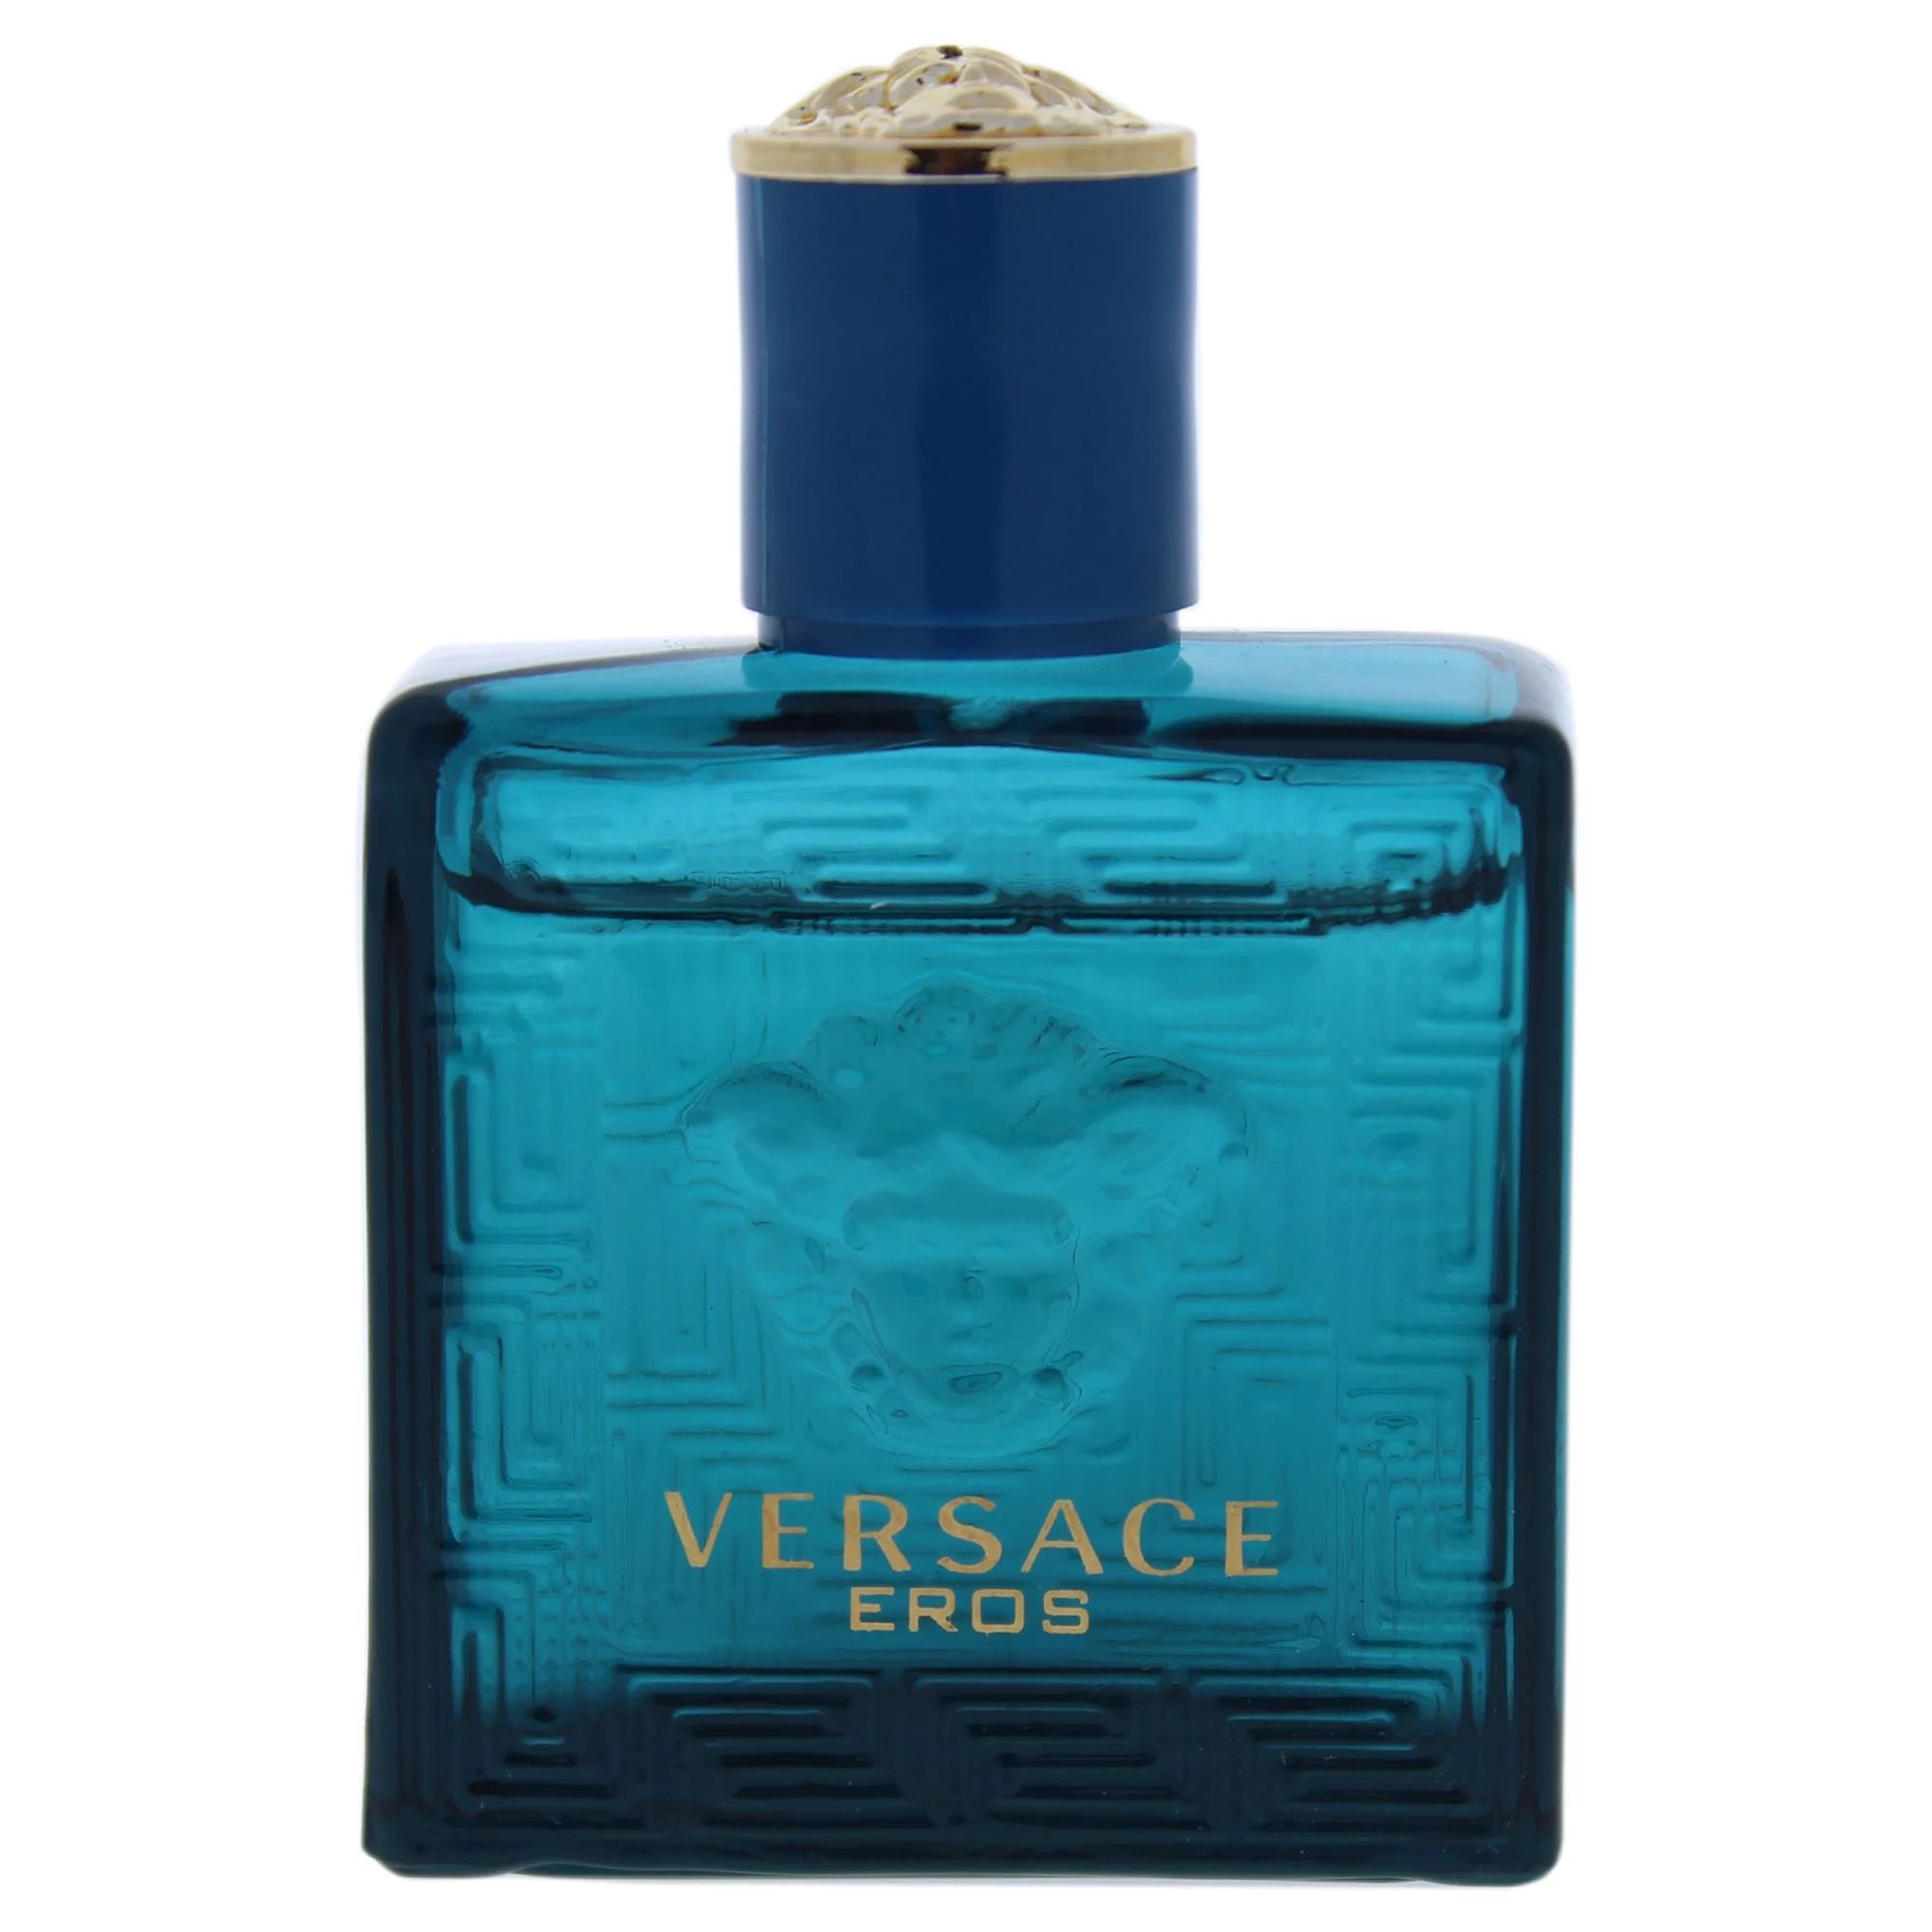 Versace Eros Eau De Toilette, Cologne for Men, 0.17 oz Mini | Walmart (US)